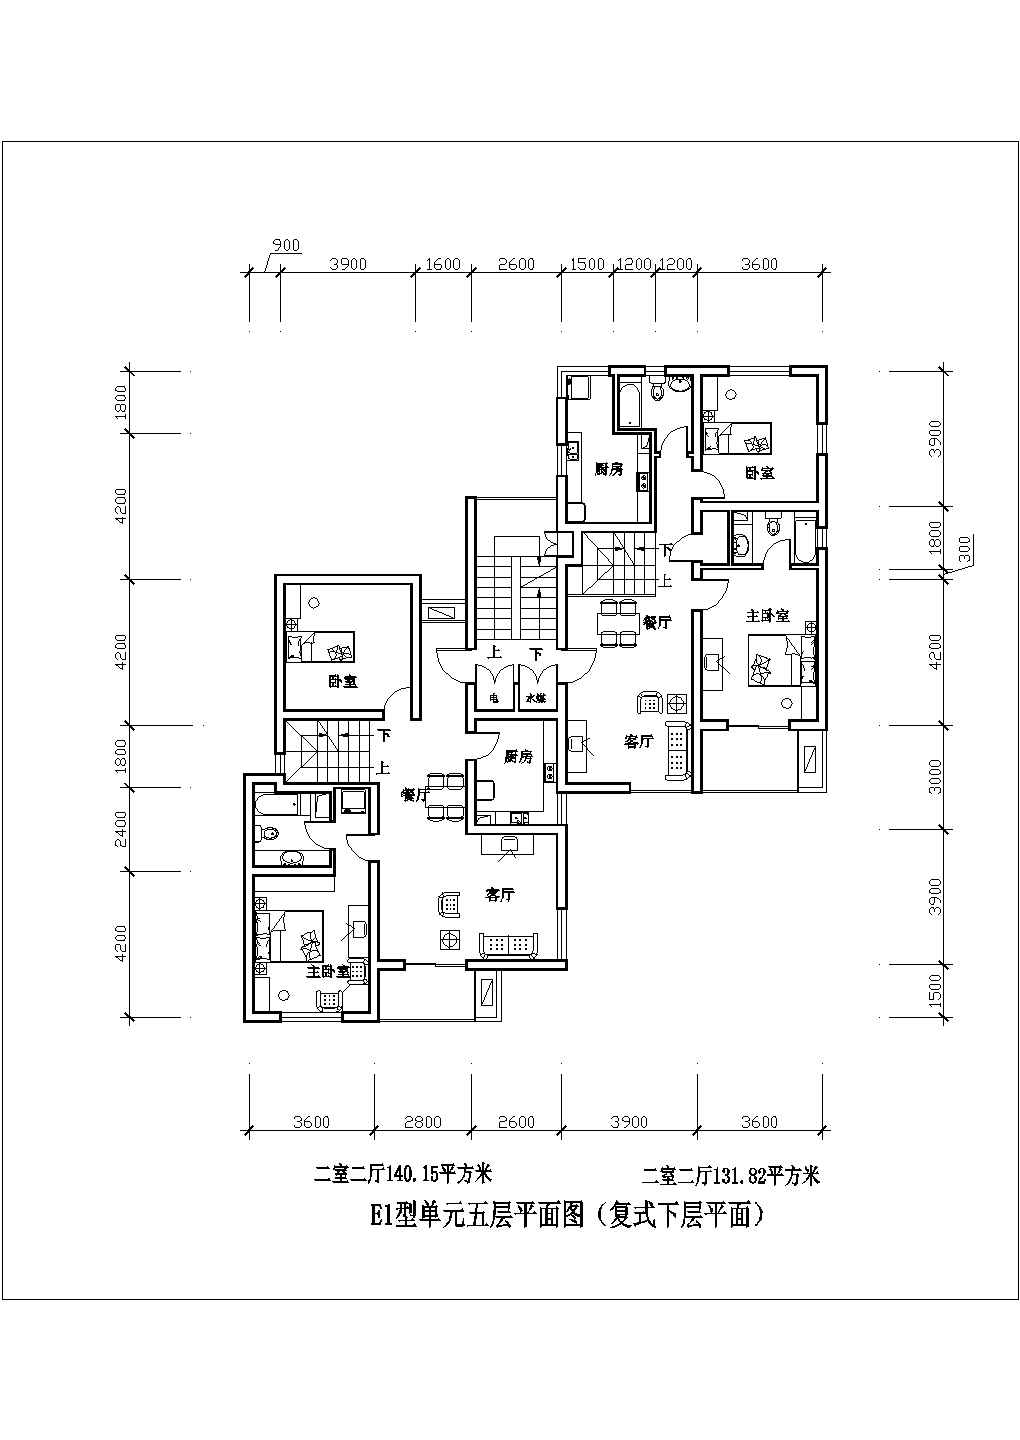 株洲市二室二厅140平米设计全套施工cad图